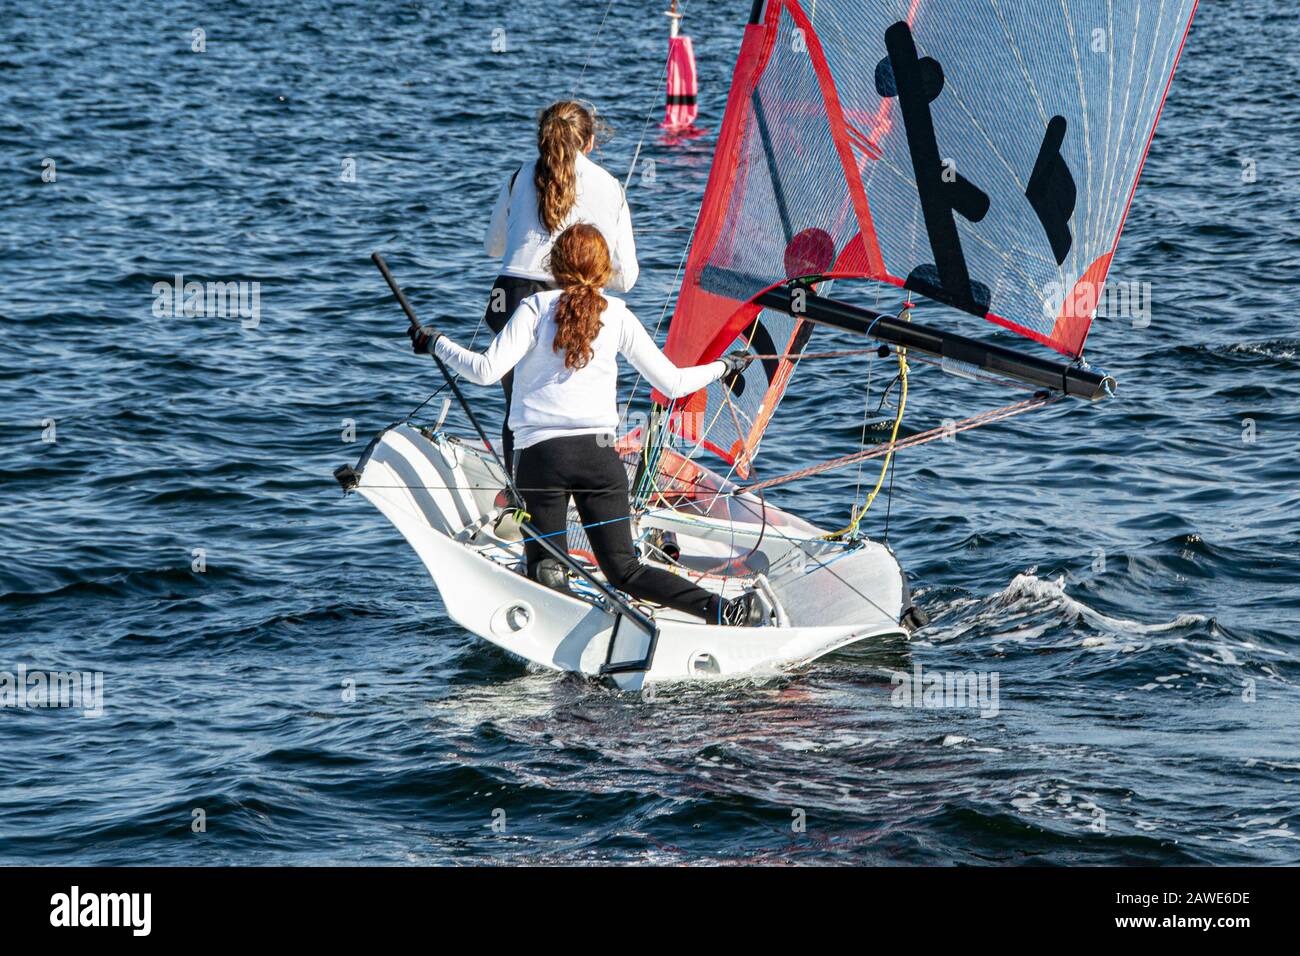 Deux filles voile petit voilier avec de longs cheveux rouges vue rapprochée de derrière. Travail d'équipe par des marins juniors en course sur le lac d'eau salée Macquarie. Banque D'Images